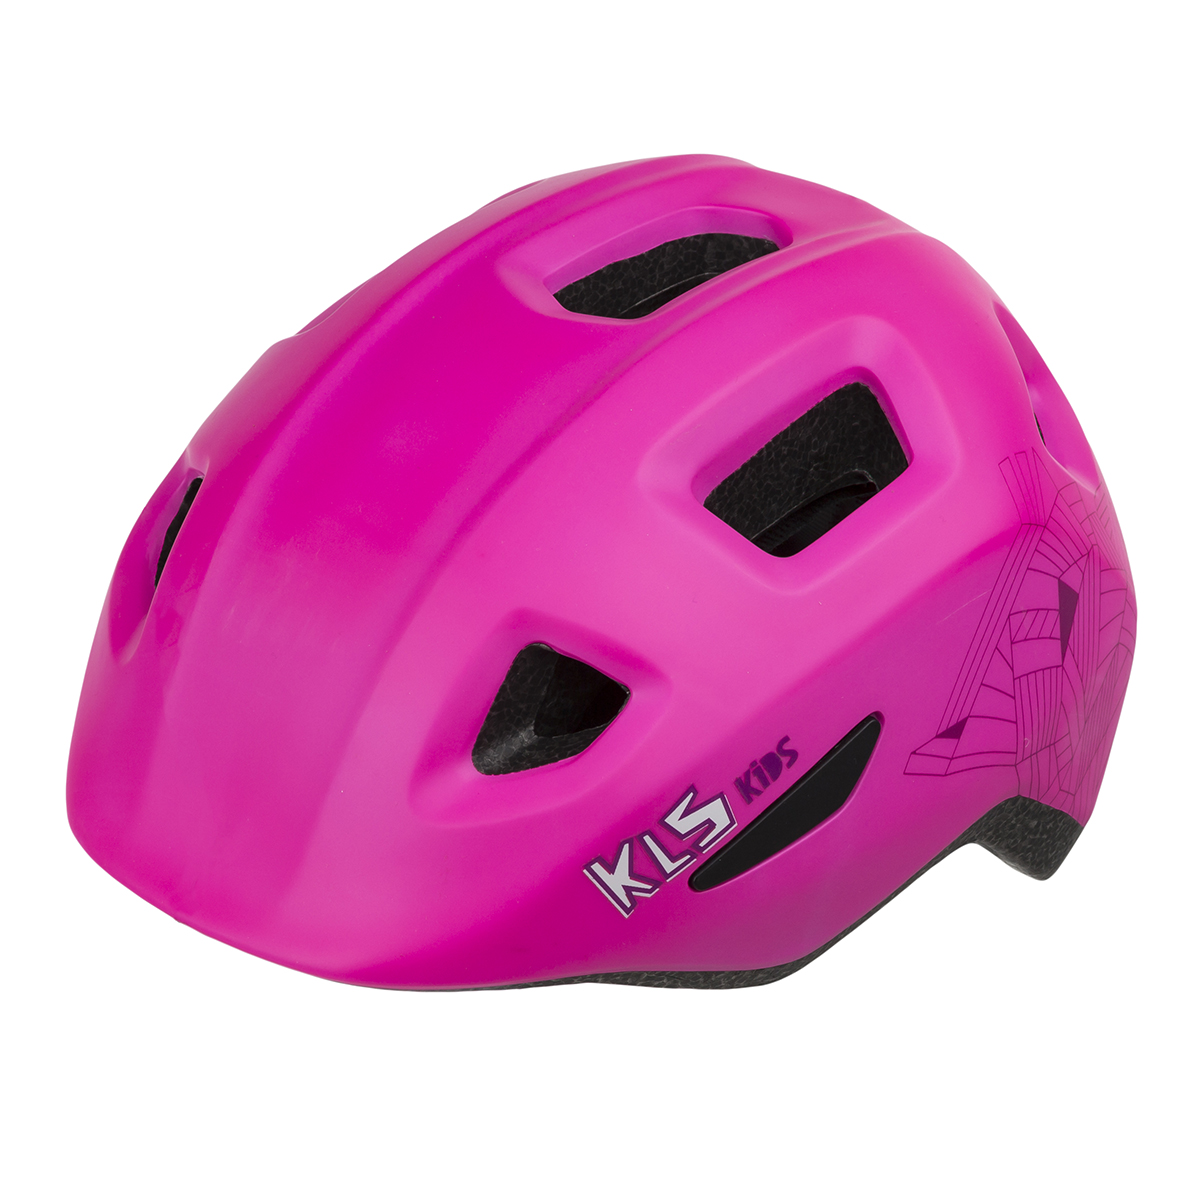 Велосипедный шлем Kellys Acey, pink, XS